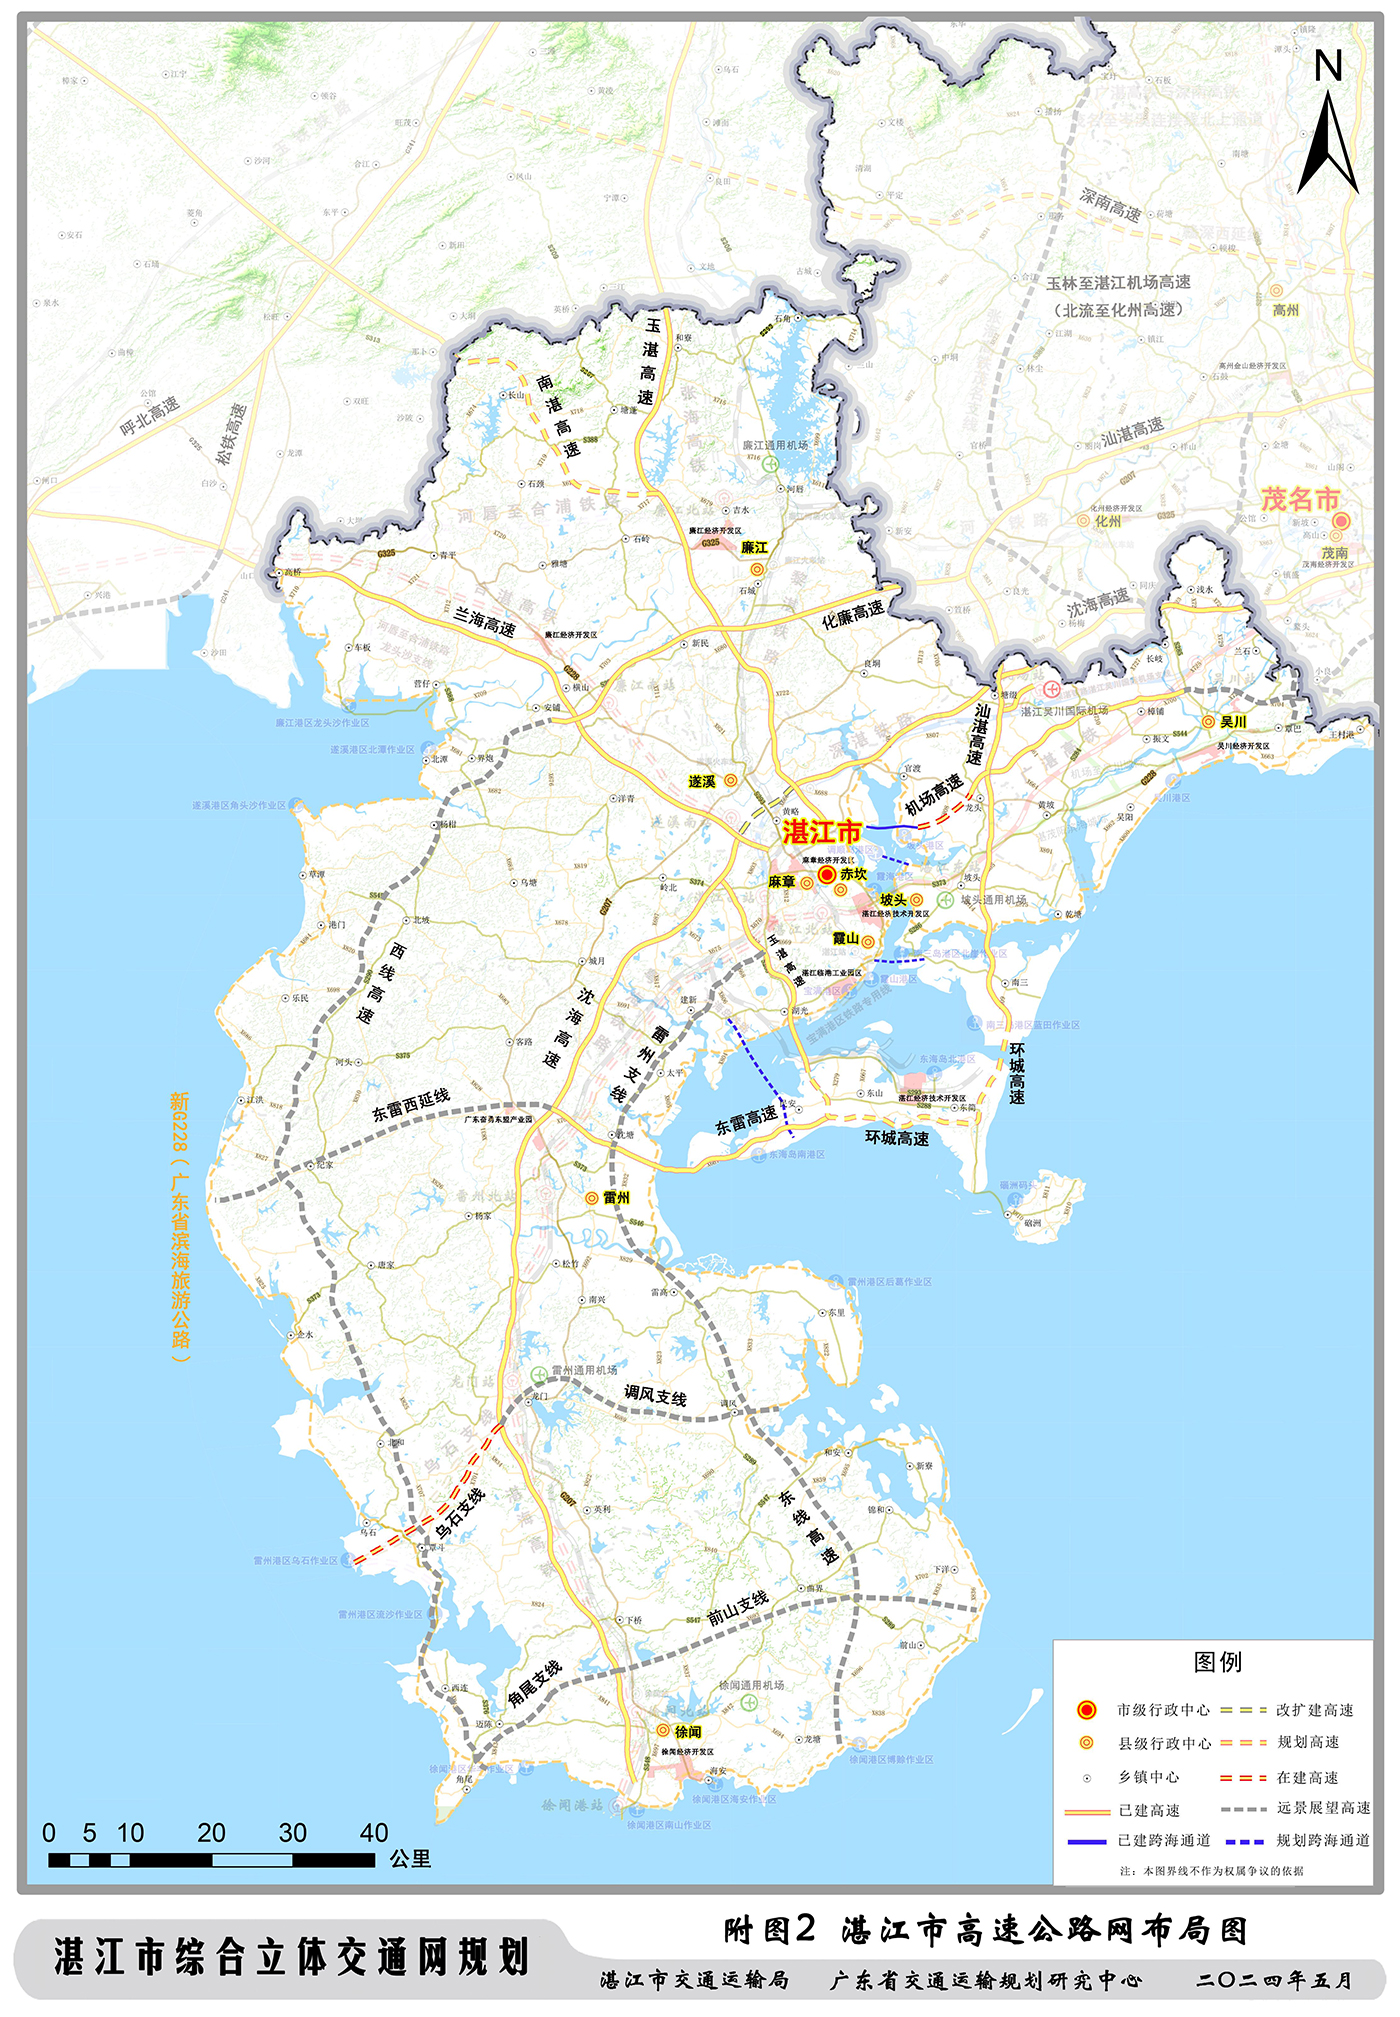 湛江市综合立体交通网规划出炉 到2035年湛江交通网这样建